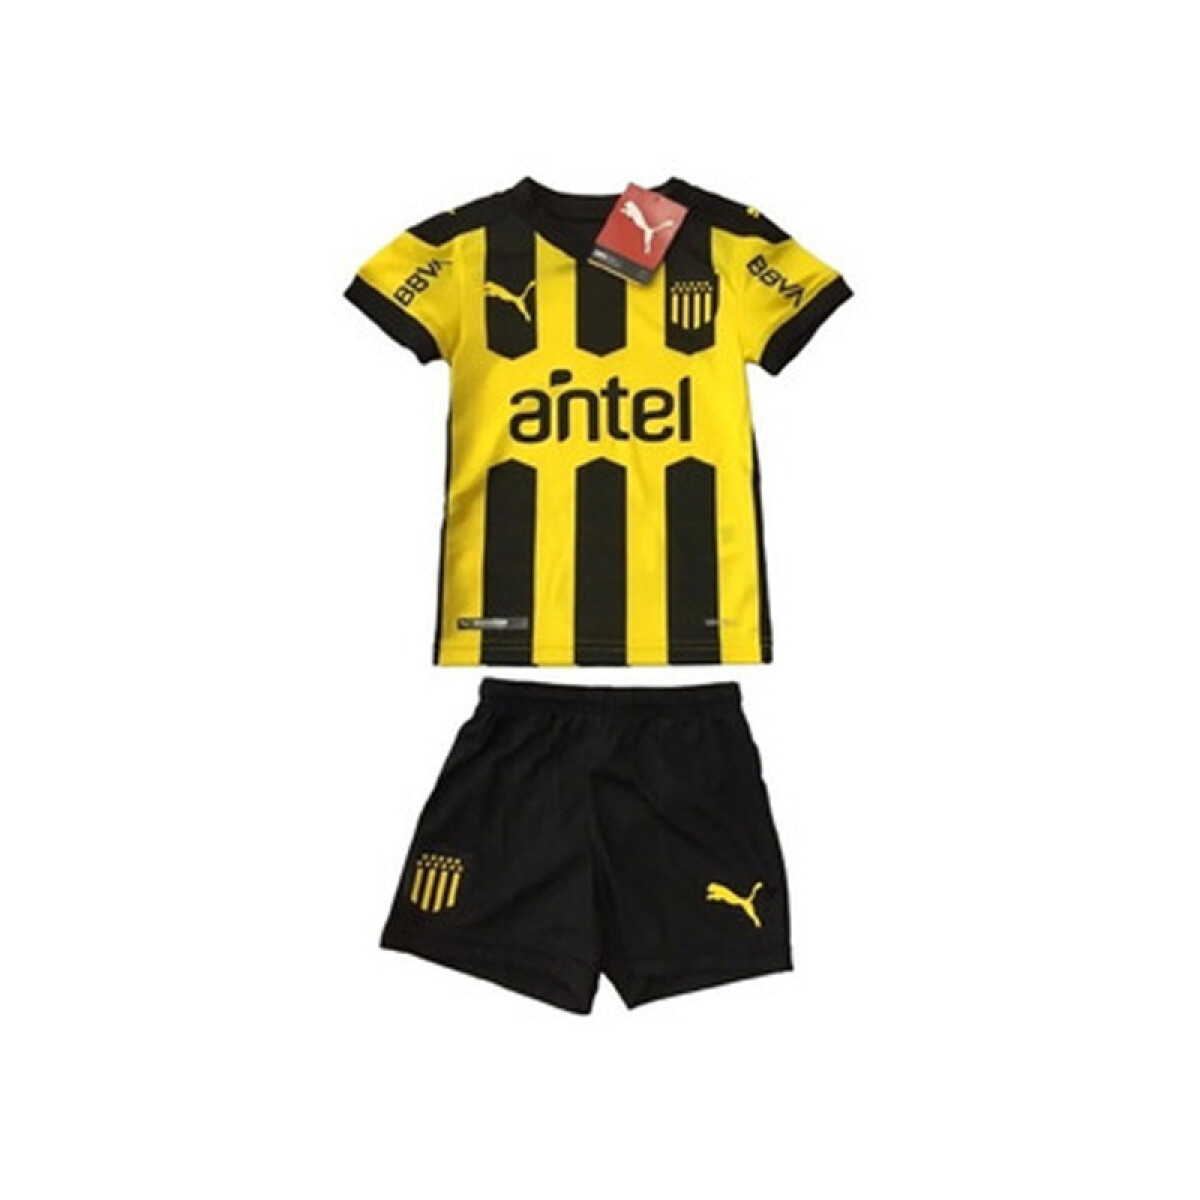 Peñarol mini kit 76498901 - Amarillo/negro 